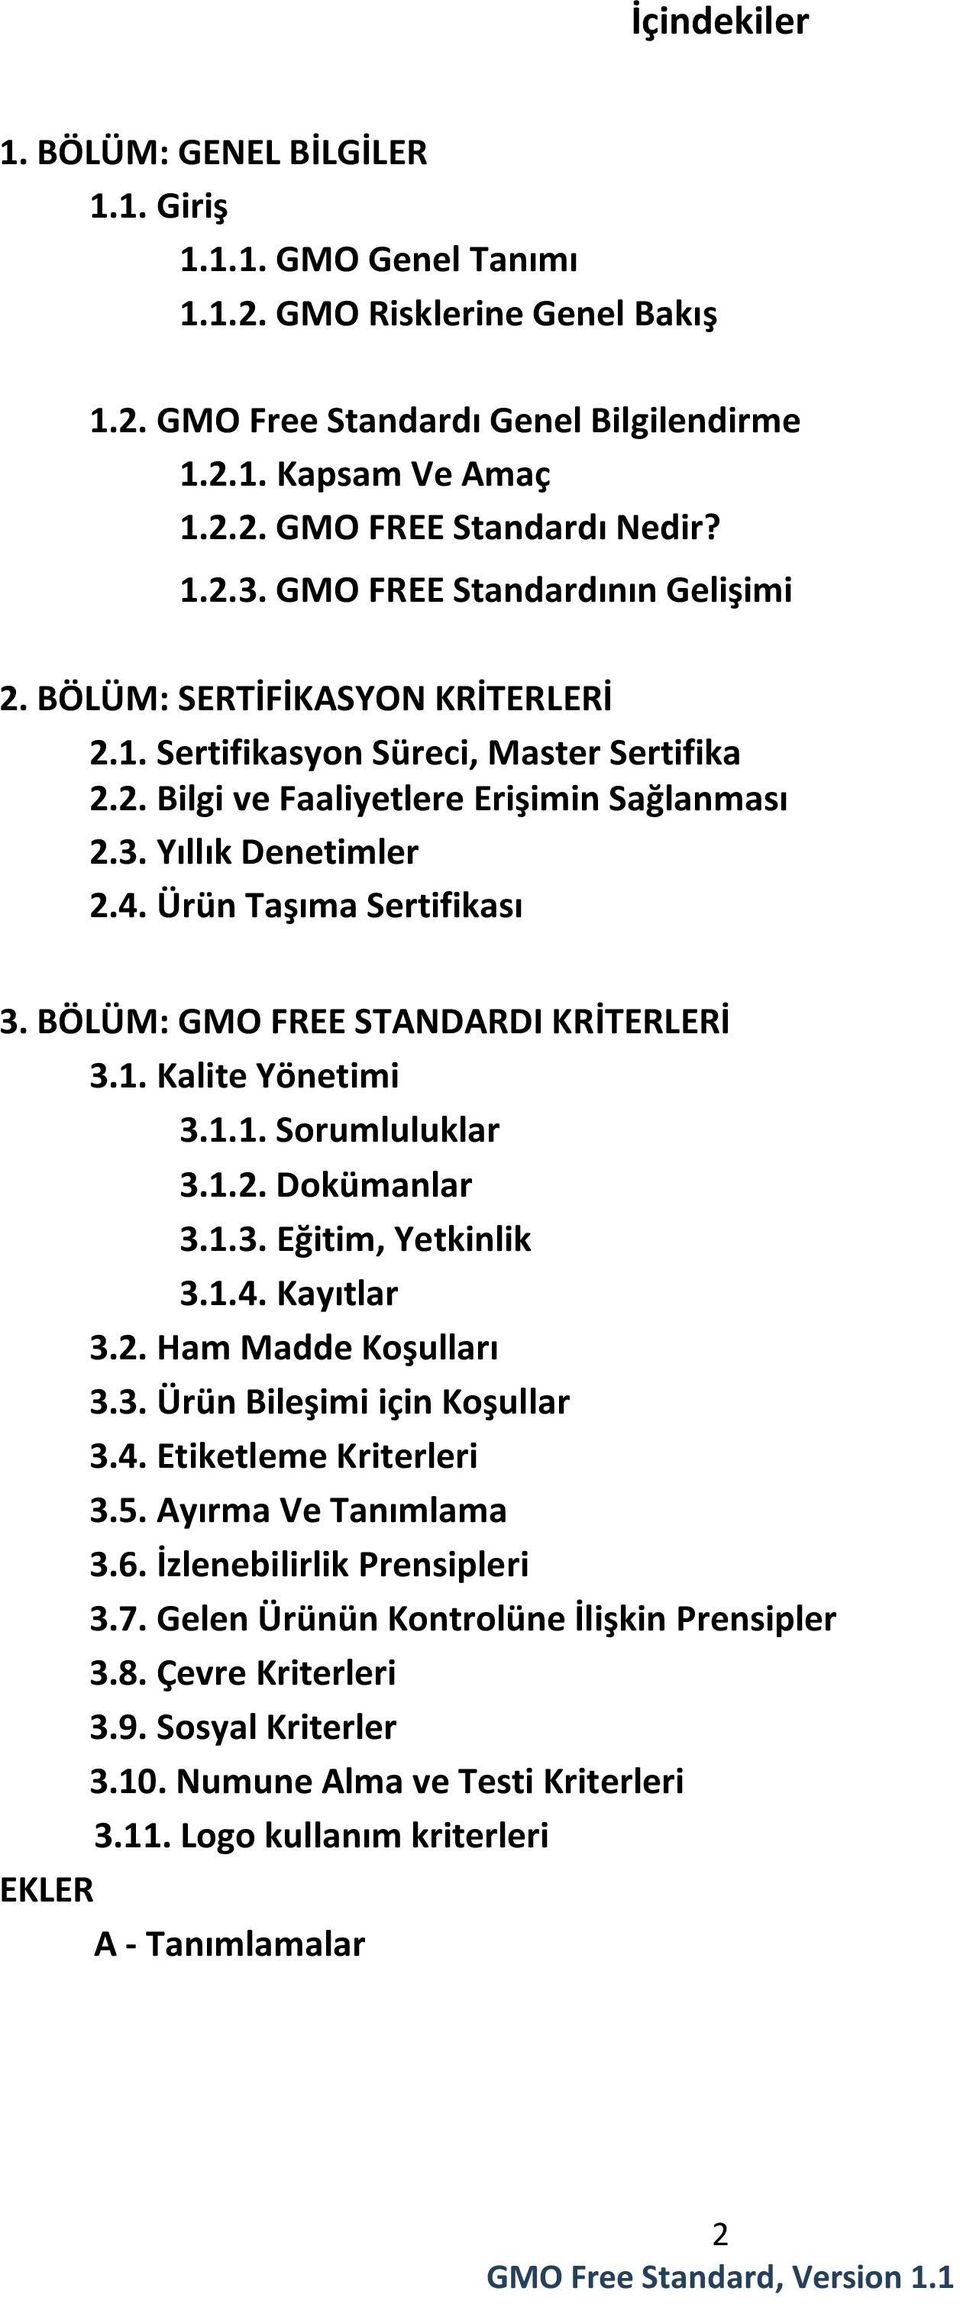 Ürün Taşıma Sertifikası 3. BÖLÜM: GMO FREE STANDARDI KRİTERLERİ 3.1. Kalite Yönetimi 3.1.1. Sorumluluklar 3.1.2. Dokümanlar 3.1.3. Eğitim, Yetkinlik 3.1.4. Kayıtlar 3.2. Ham Madde Koşulları 3.3. Ürün Bileşimi için Koşullar 3.